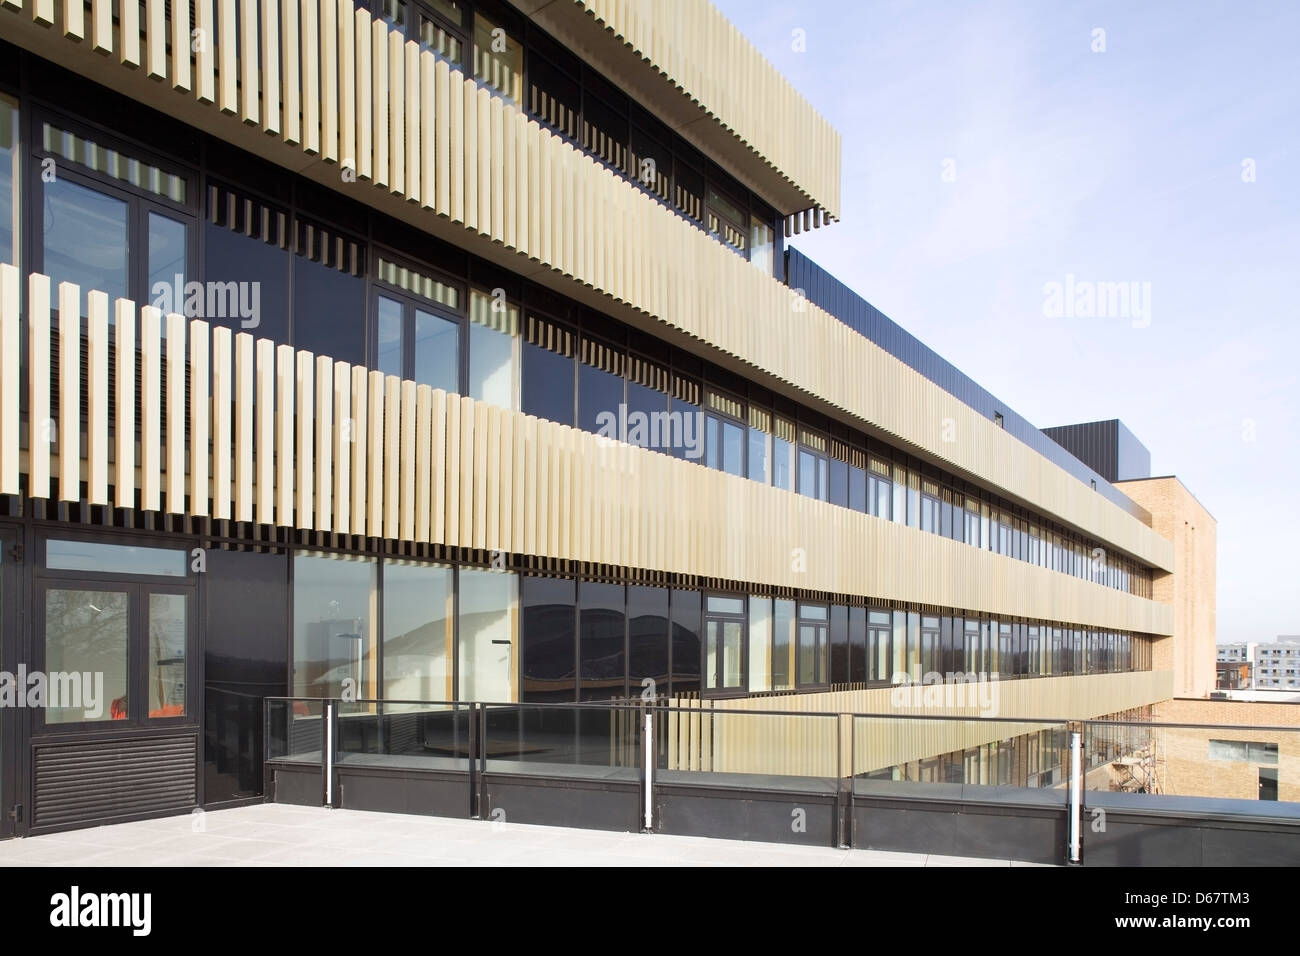 Institut für Werkstoffkunde und Metallurgie Gebäude, Cambridge, Vereinigtes Königreich. Architekt: NBBJ, 2013. Detailansicht des balcon Stockfoto